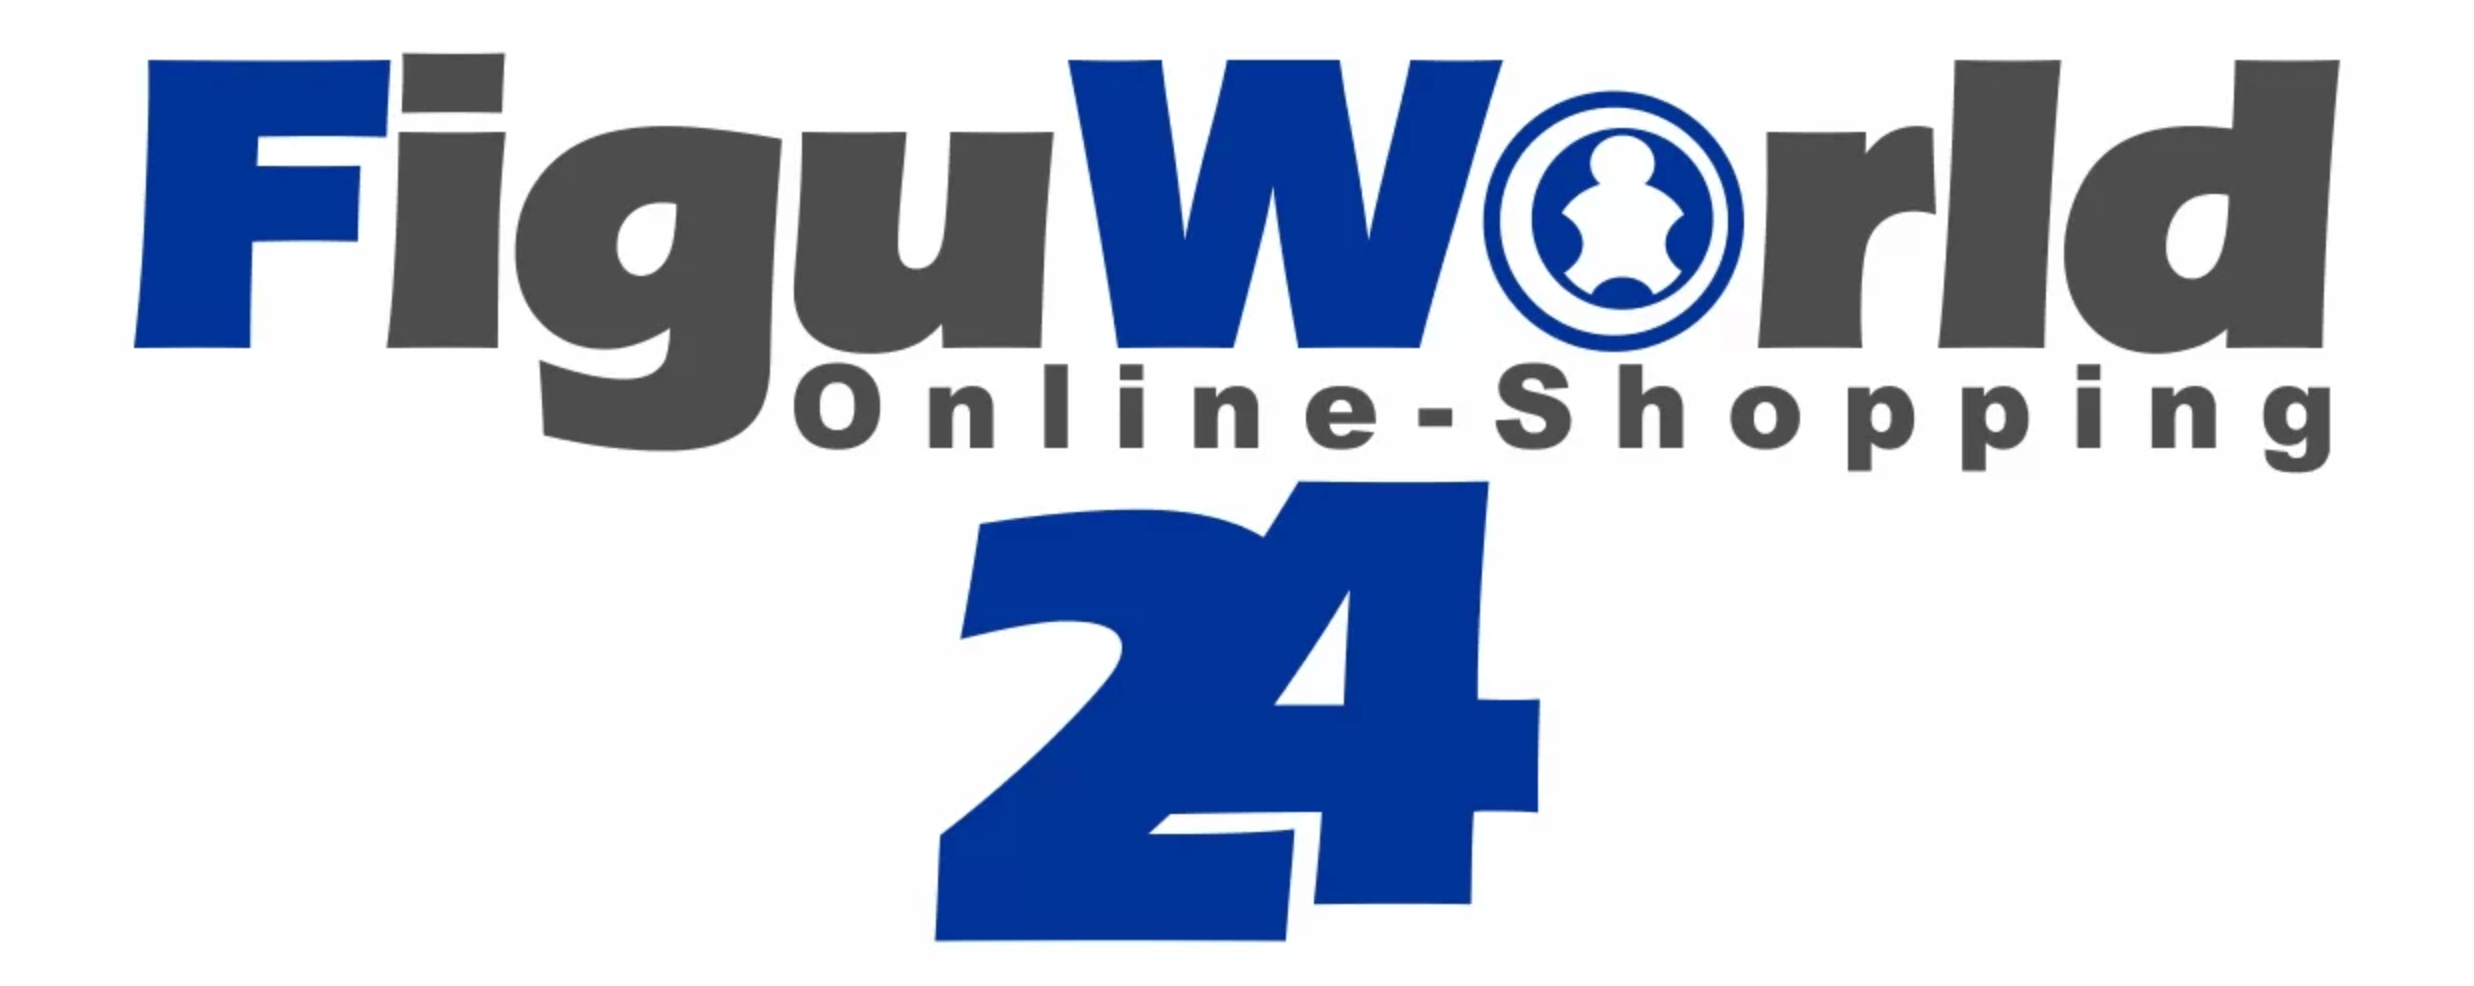 Figuworld24 Partnerprogramm